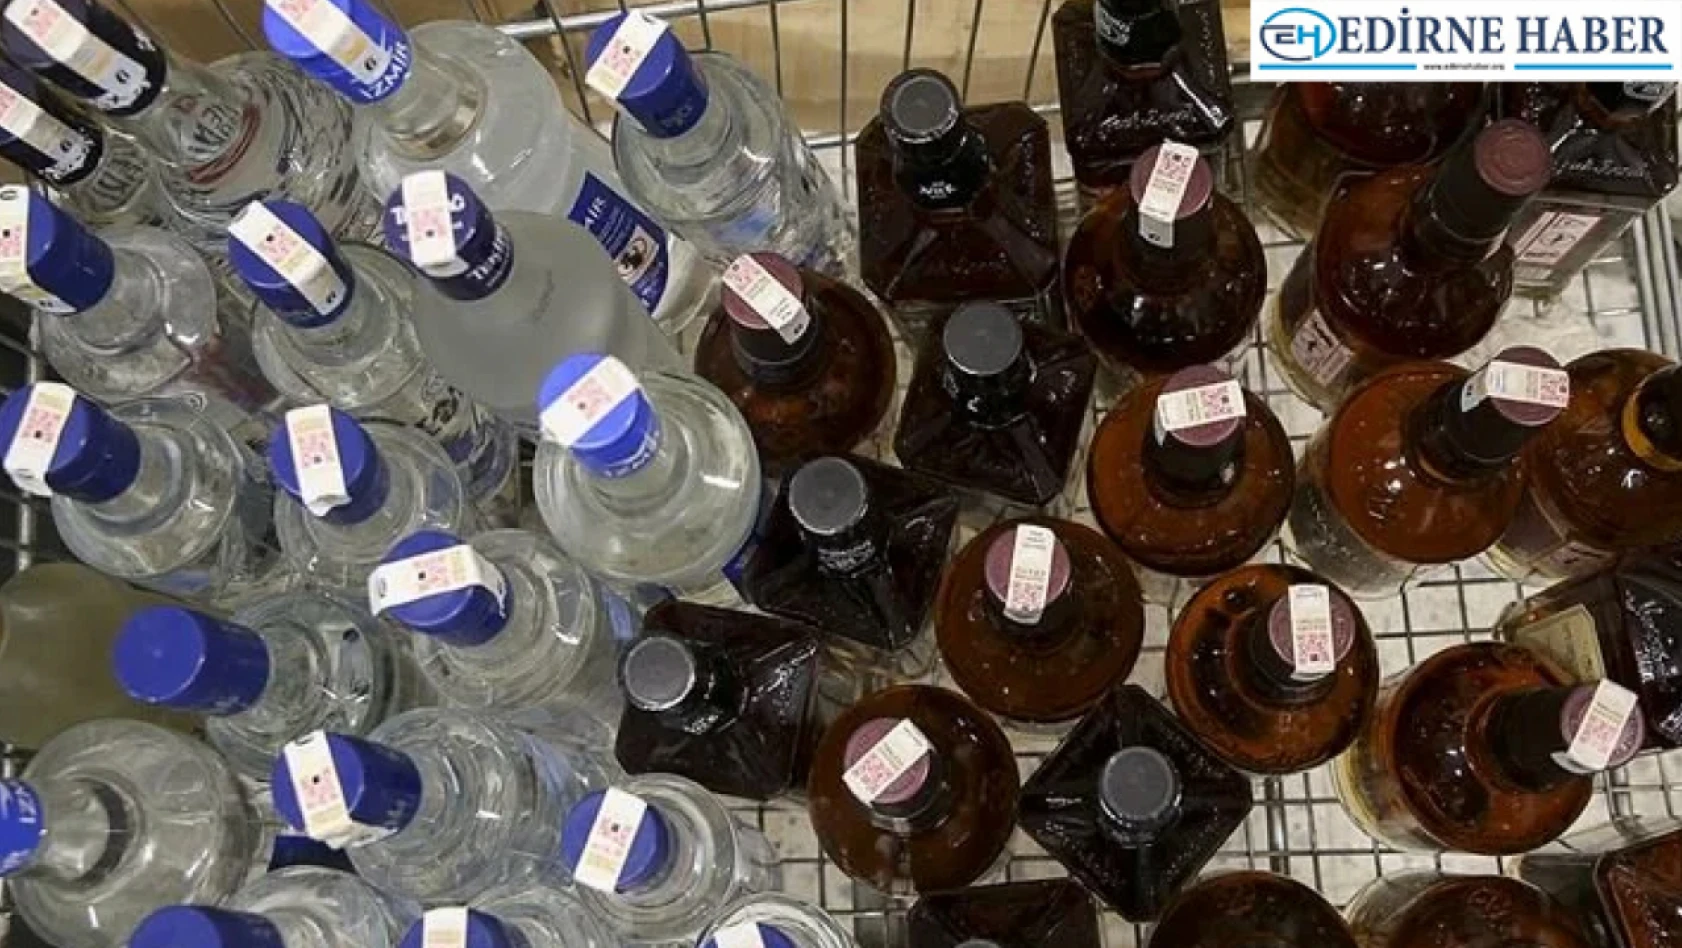 Edirne'de 92,5 litre kaçak içki ele geçirildi